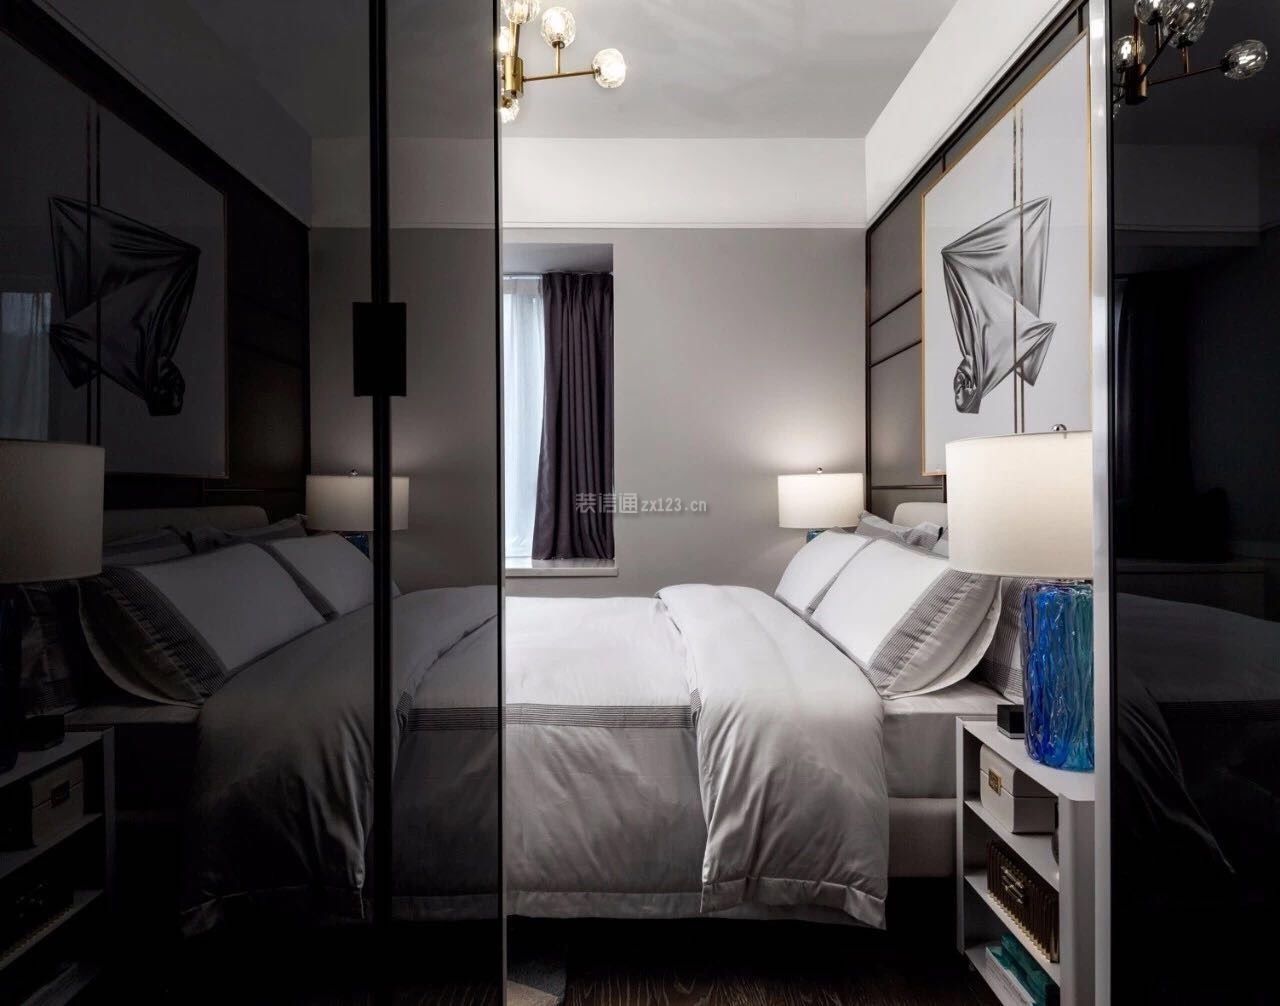 卧室现代装修 卧室现代窗帘 卧室现代装修效果图大全2020图片 